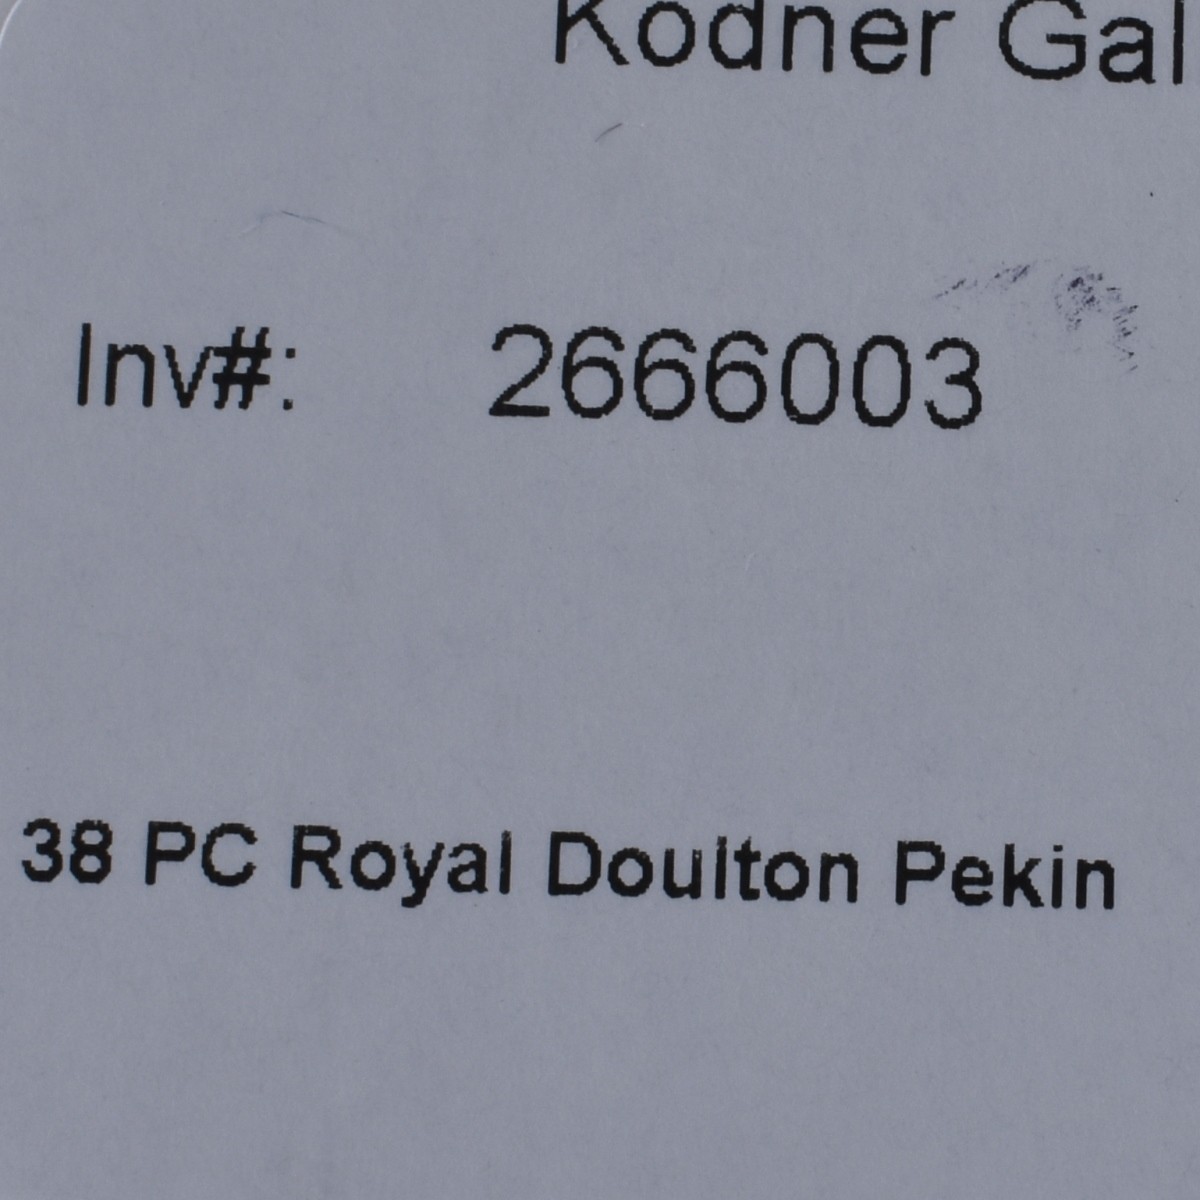 38 PC Royal Doulton Pekin